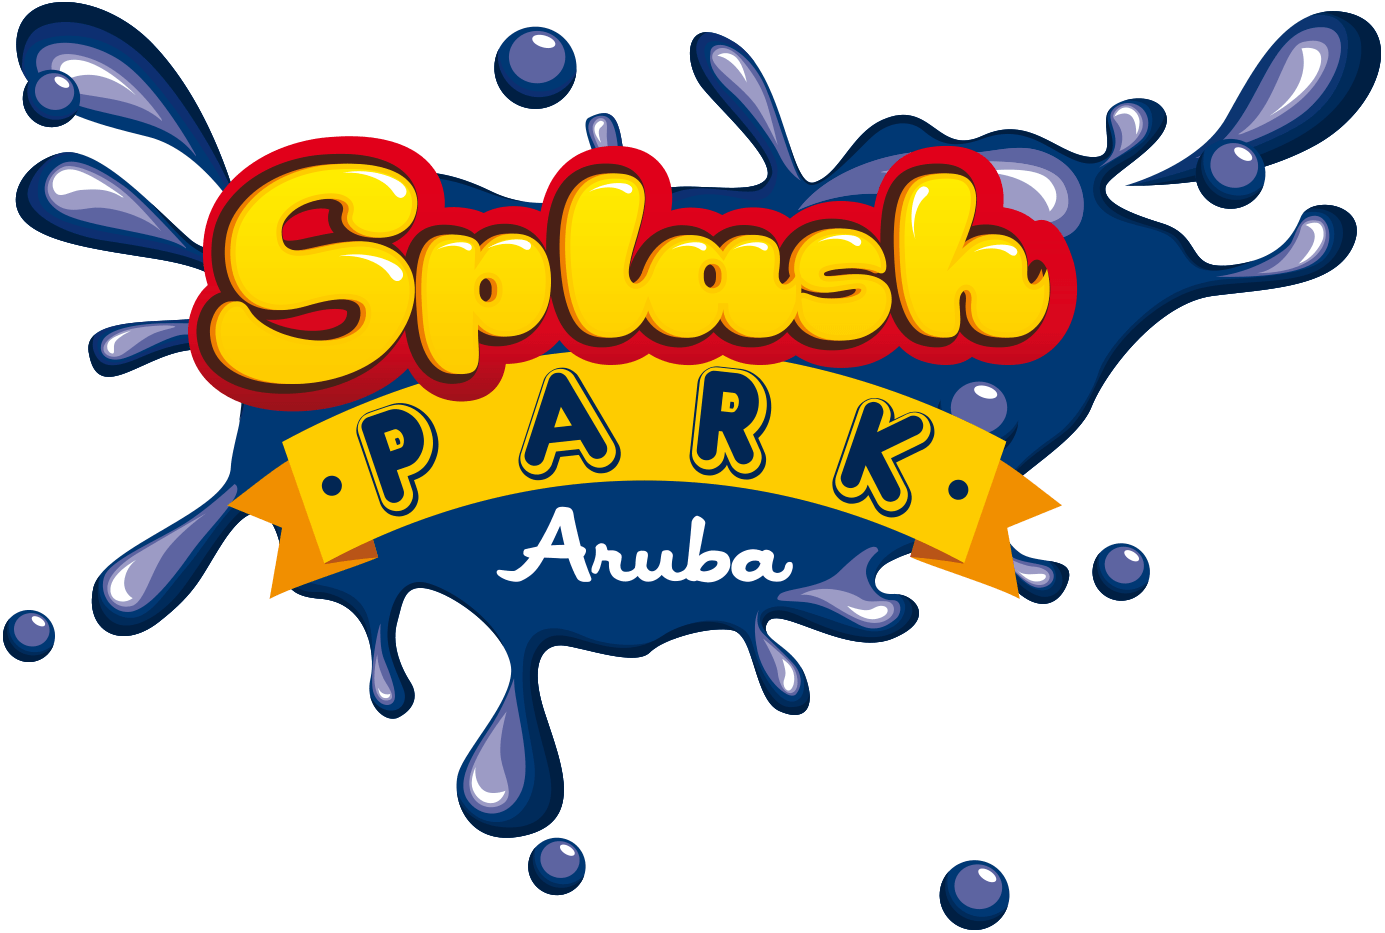 Aruba Logo - Splash Park Aruba